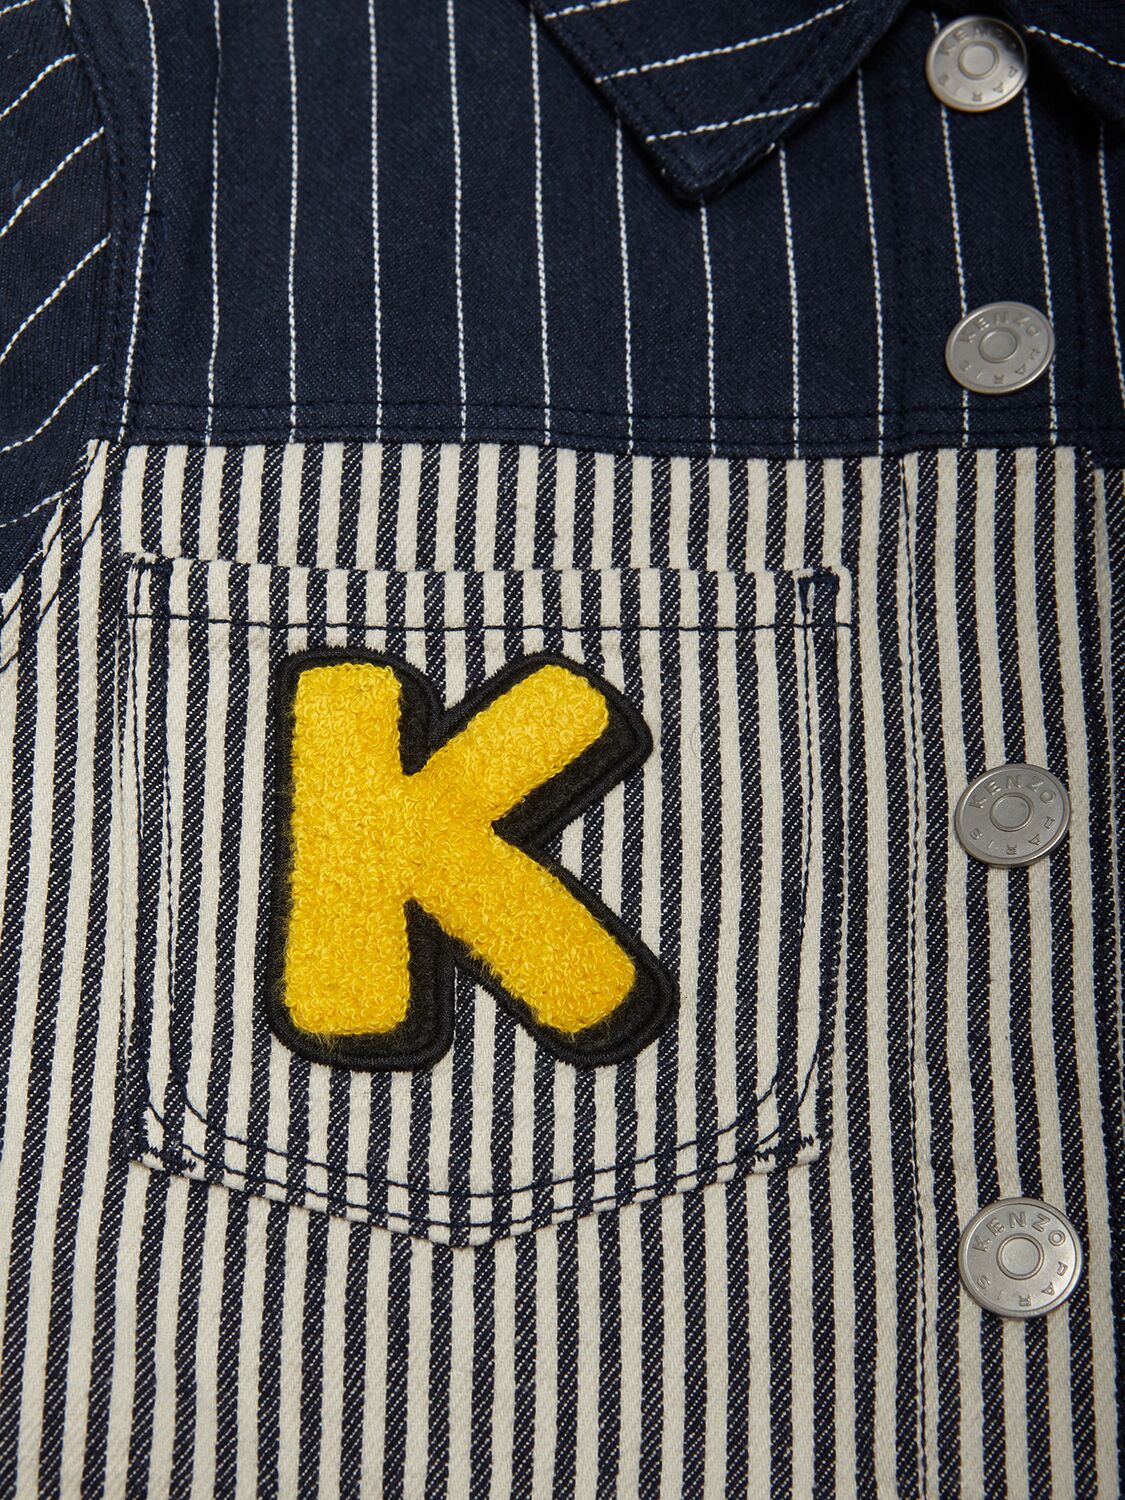 Shop Kenzo Striped Cotton Denim Jacket In Navy